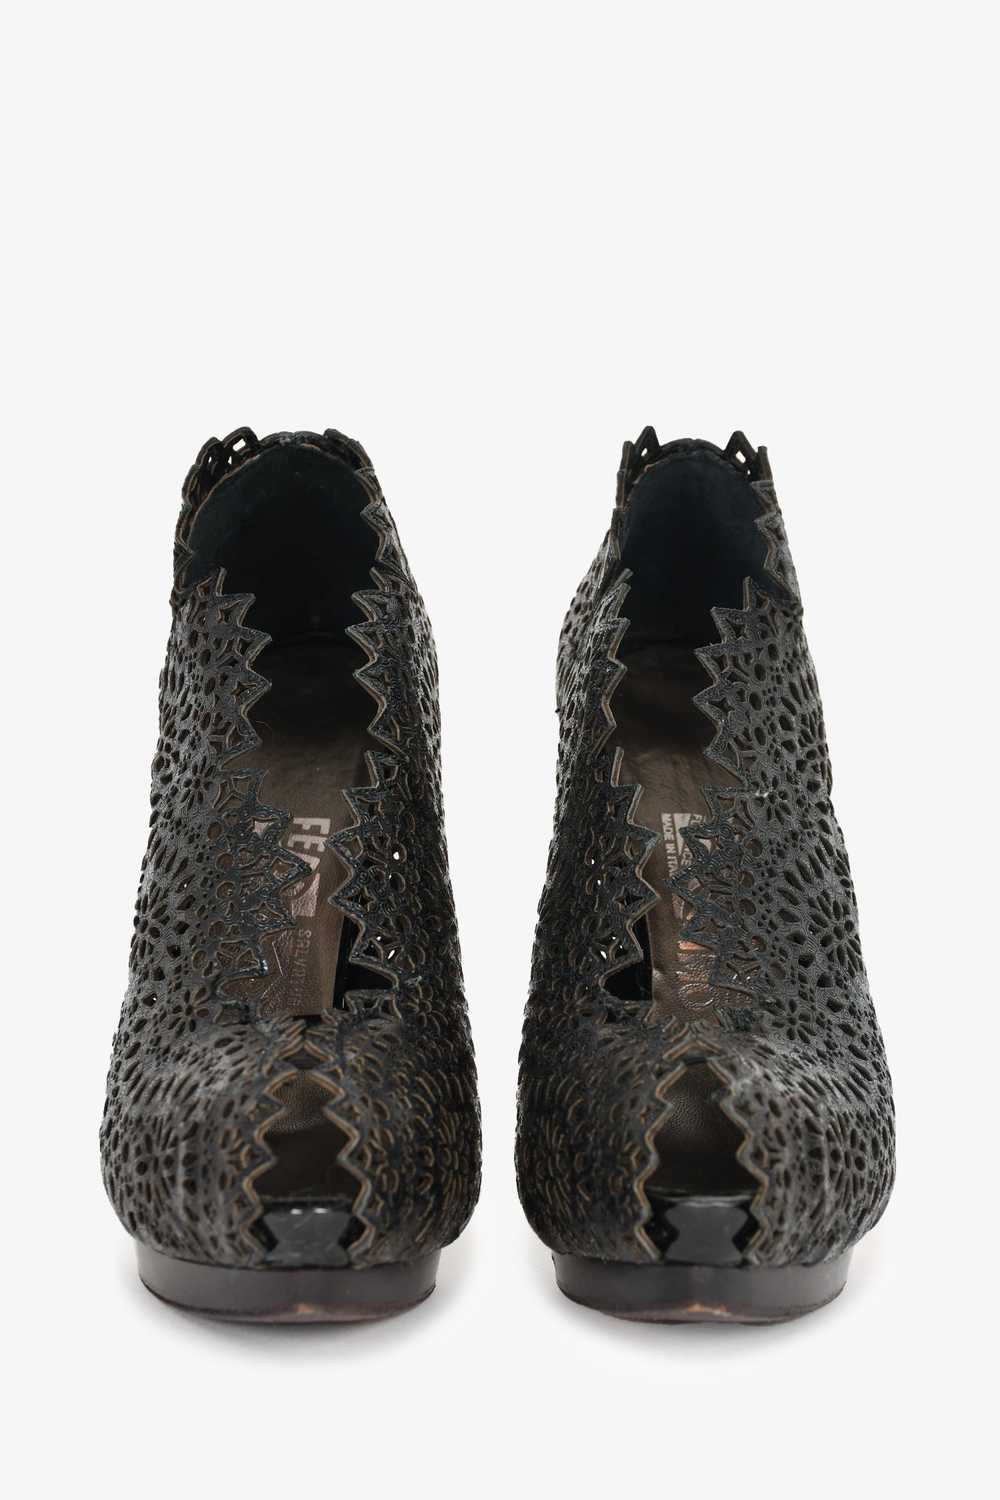 Salvatore Ferragamo Black Leather Perforated Heel… - image 3